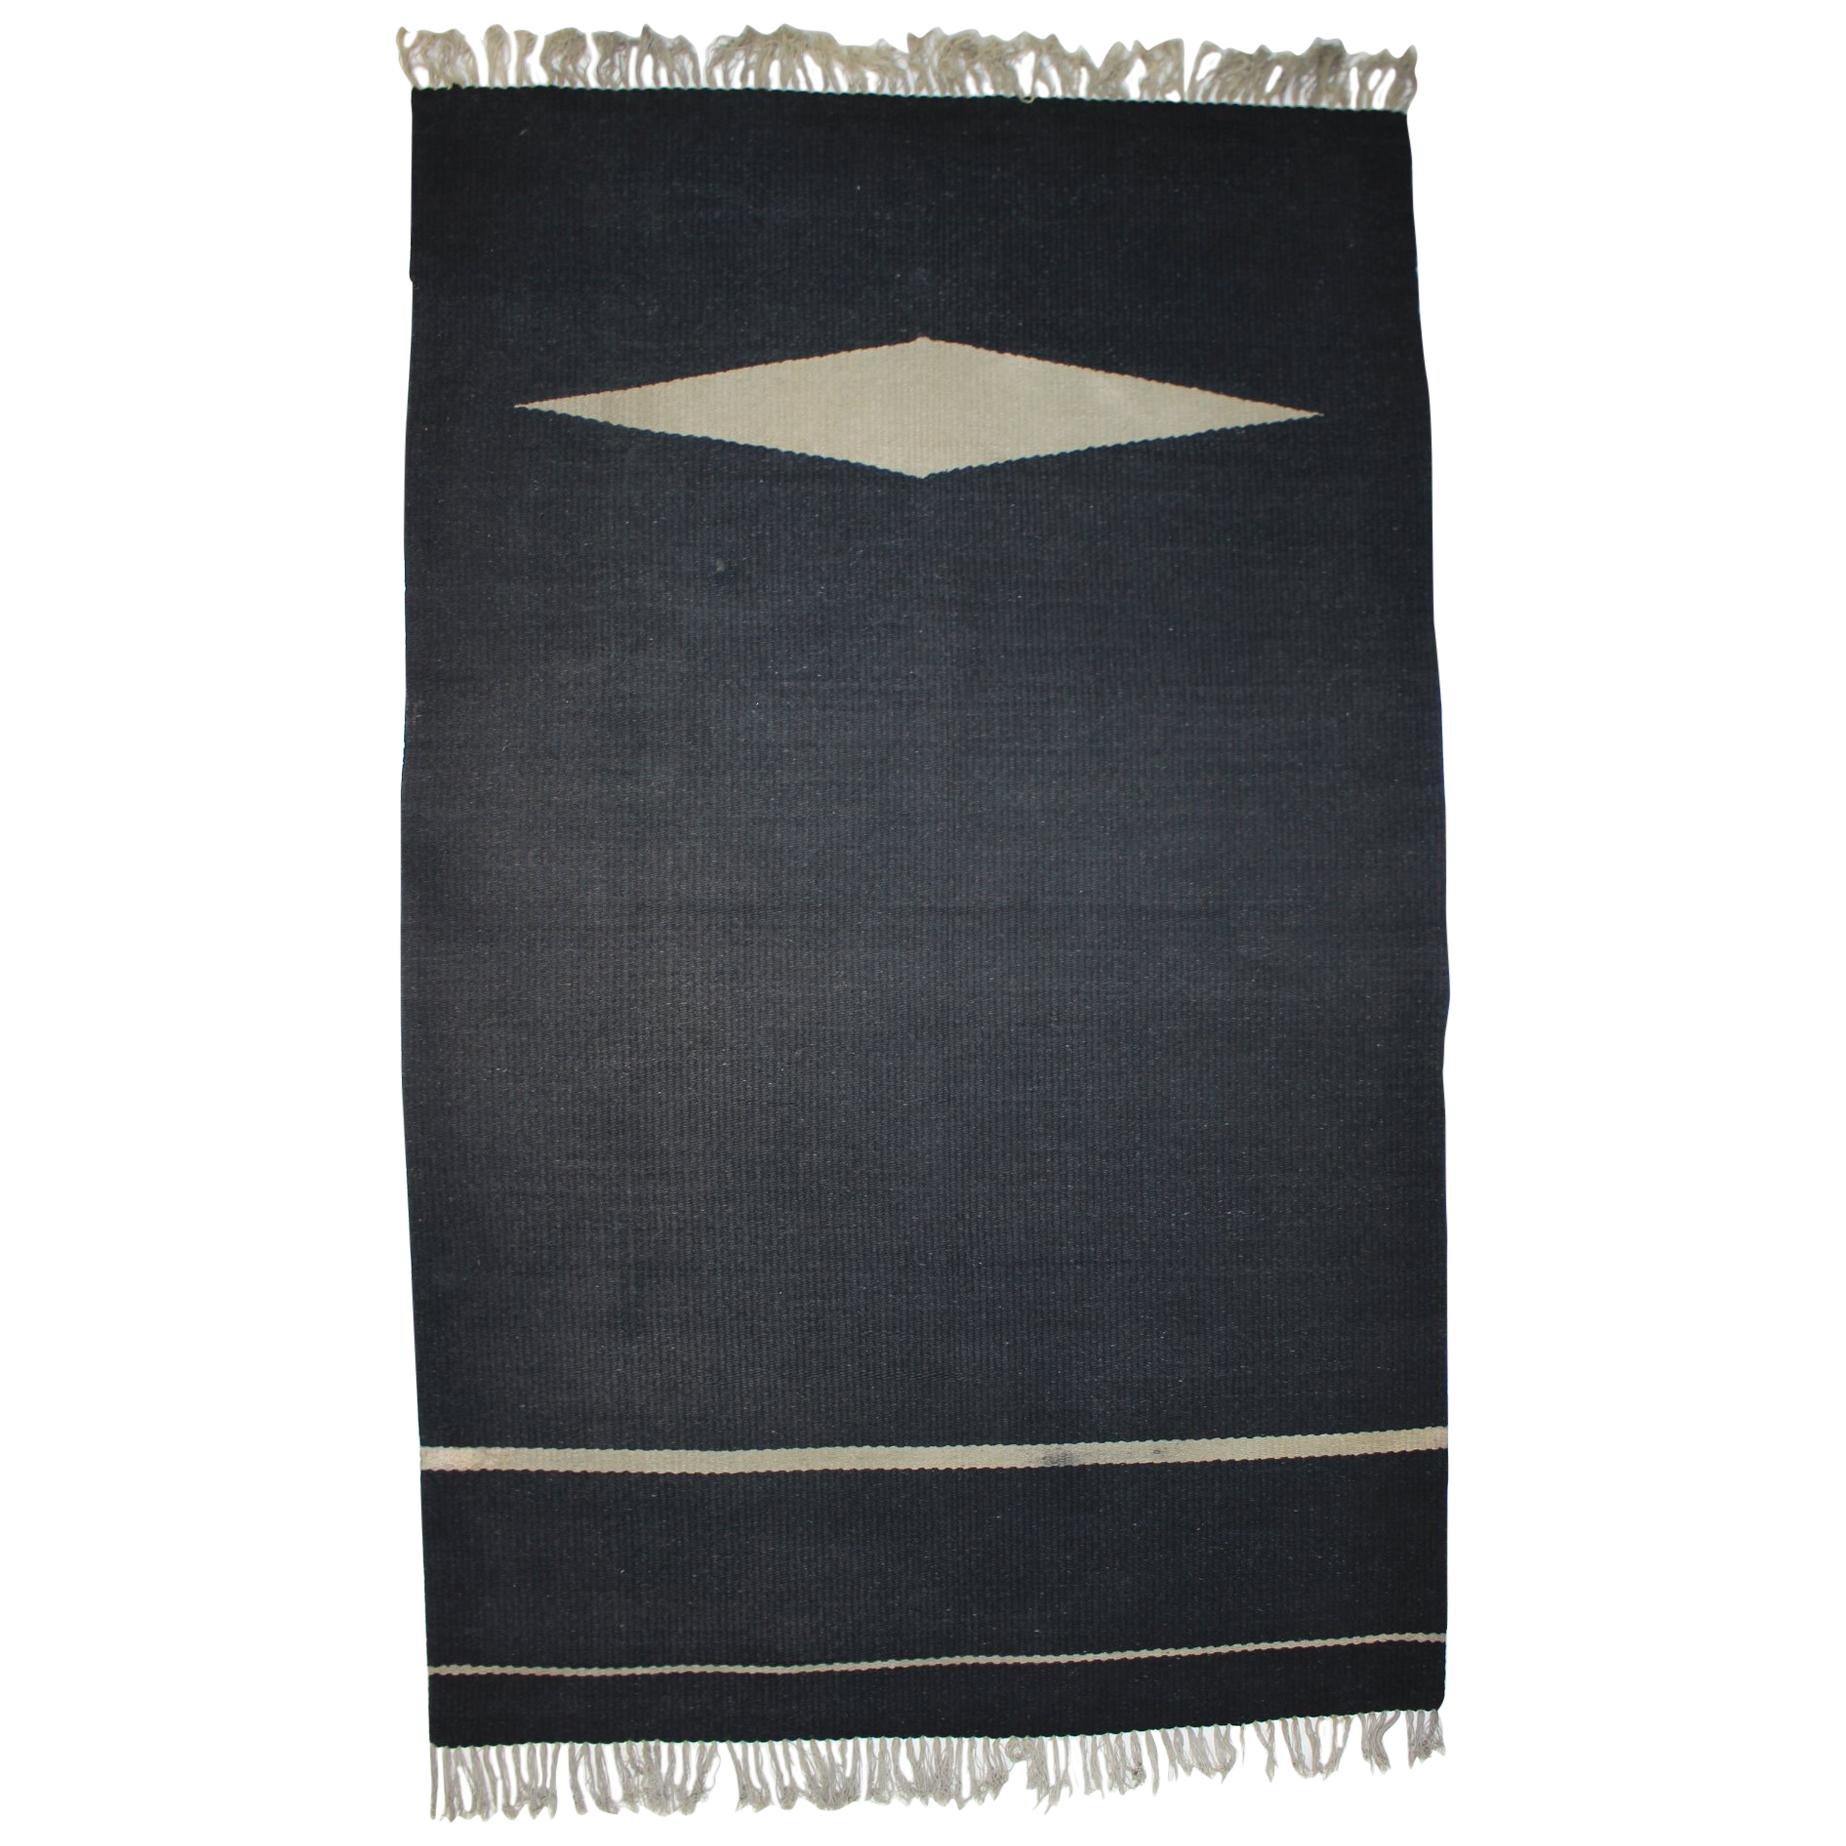 Black Design Carpet or Rug, 1950s